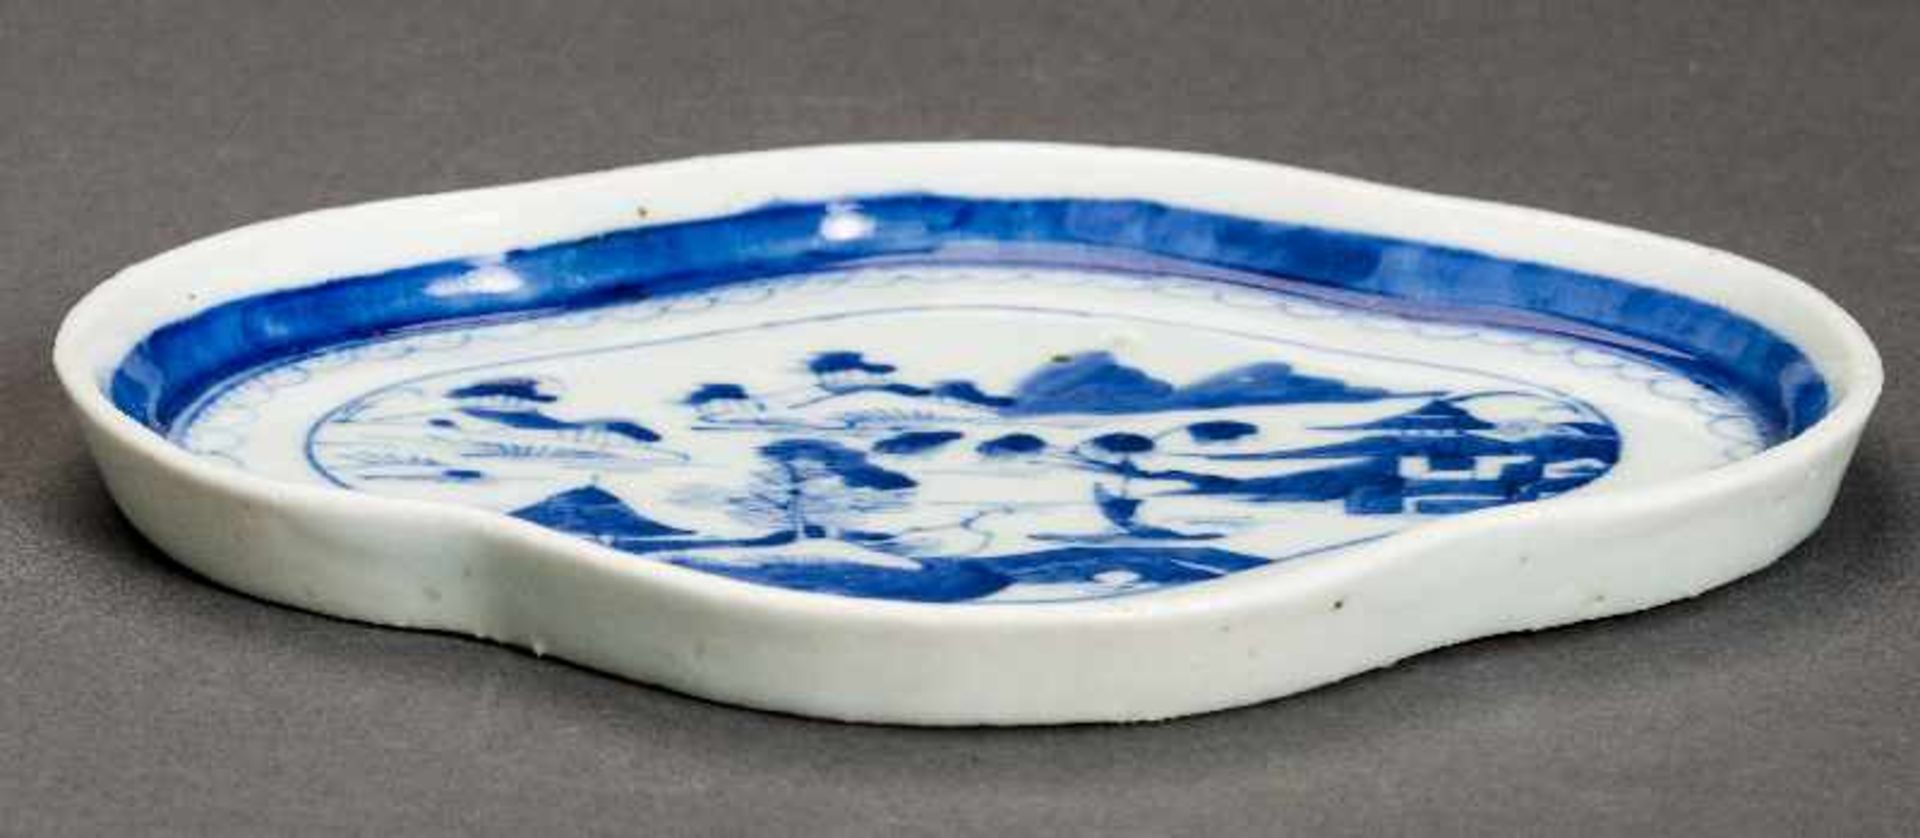 FLACHER TELLER Blauweiß-Porzellan. China, Qing-Dynastie, 19. Jh. Vierfach gelappter Teller auf - Image 3 of 5